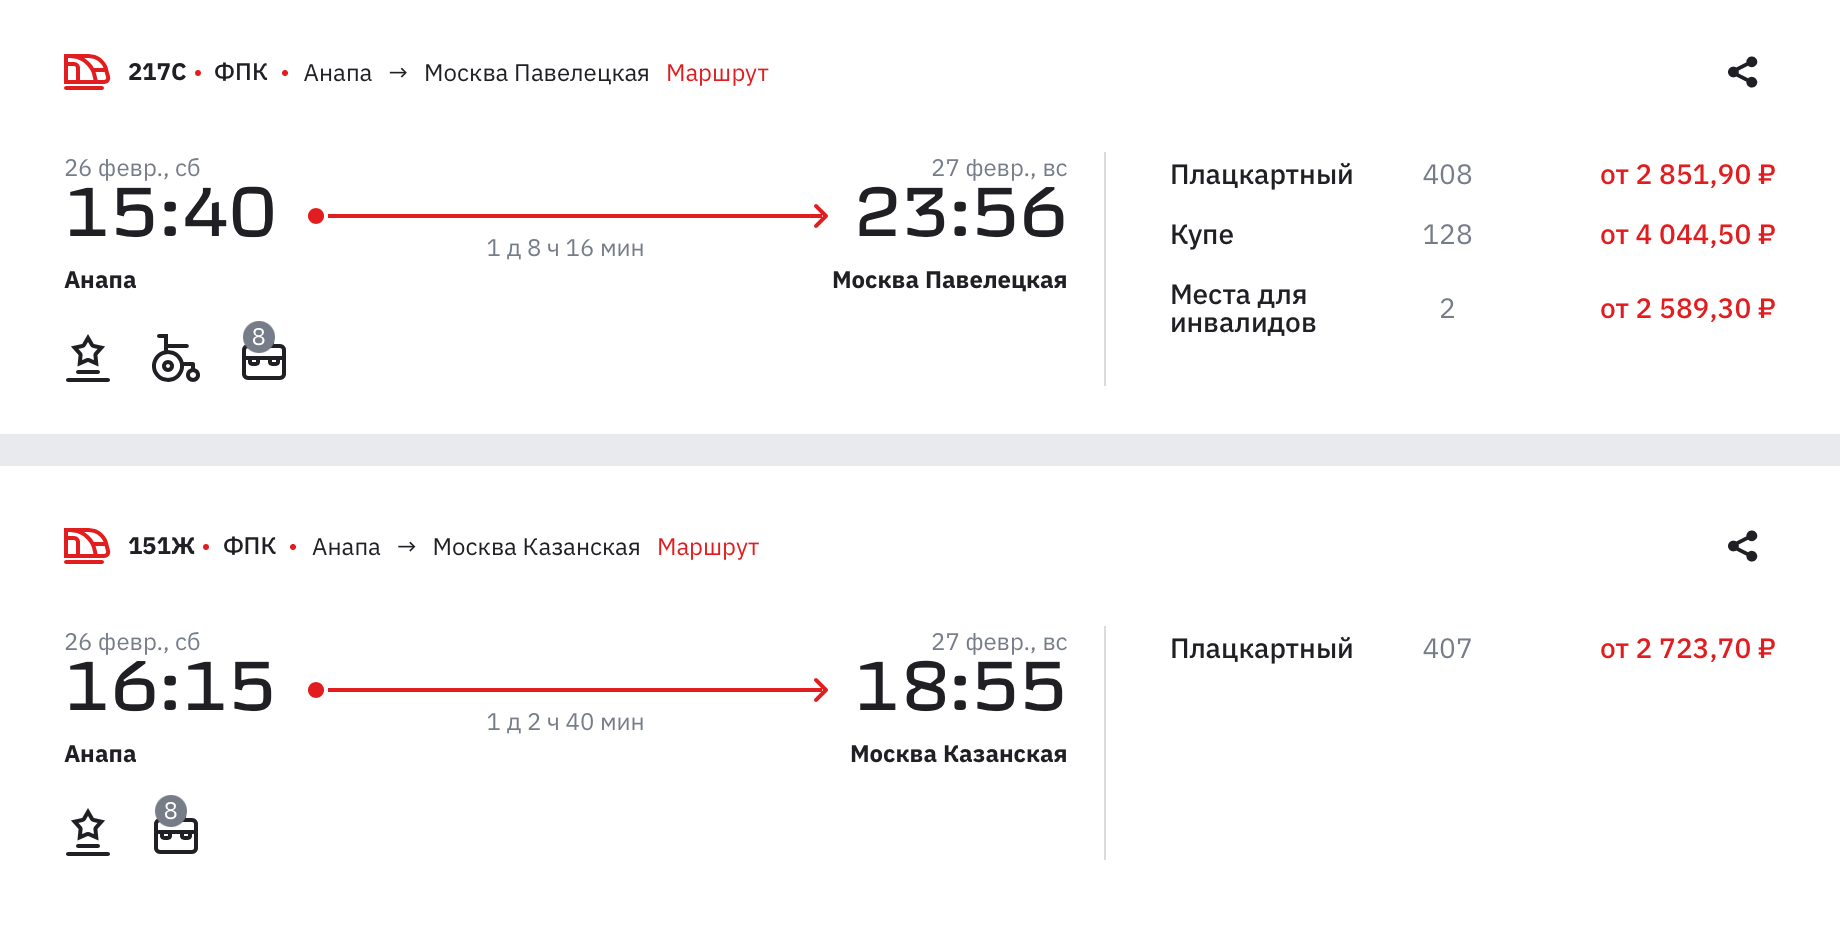 Плацкартный билет из Анапы в Москву на 26 февраля стоит от 2723 ₽